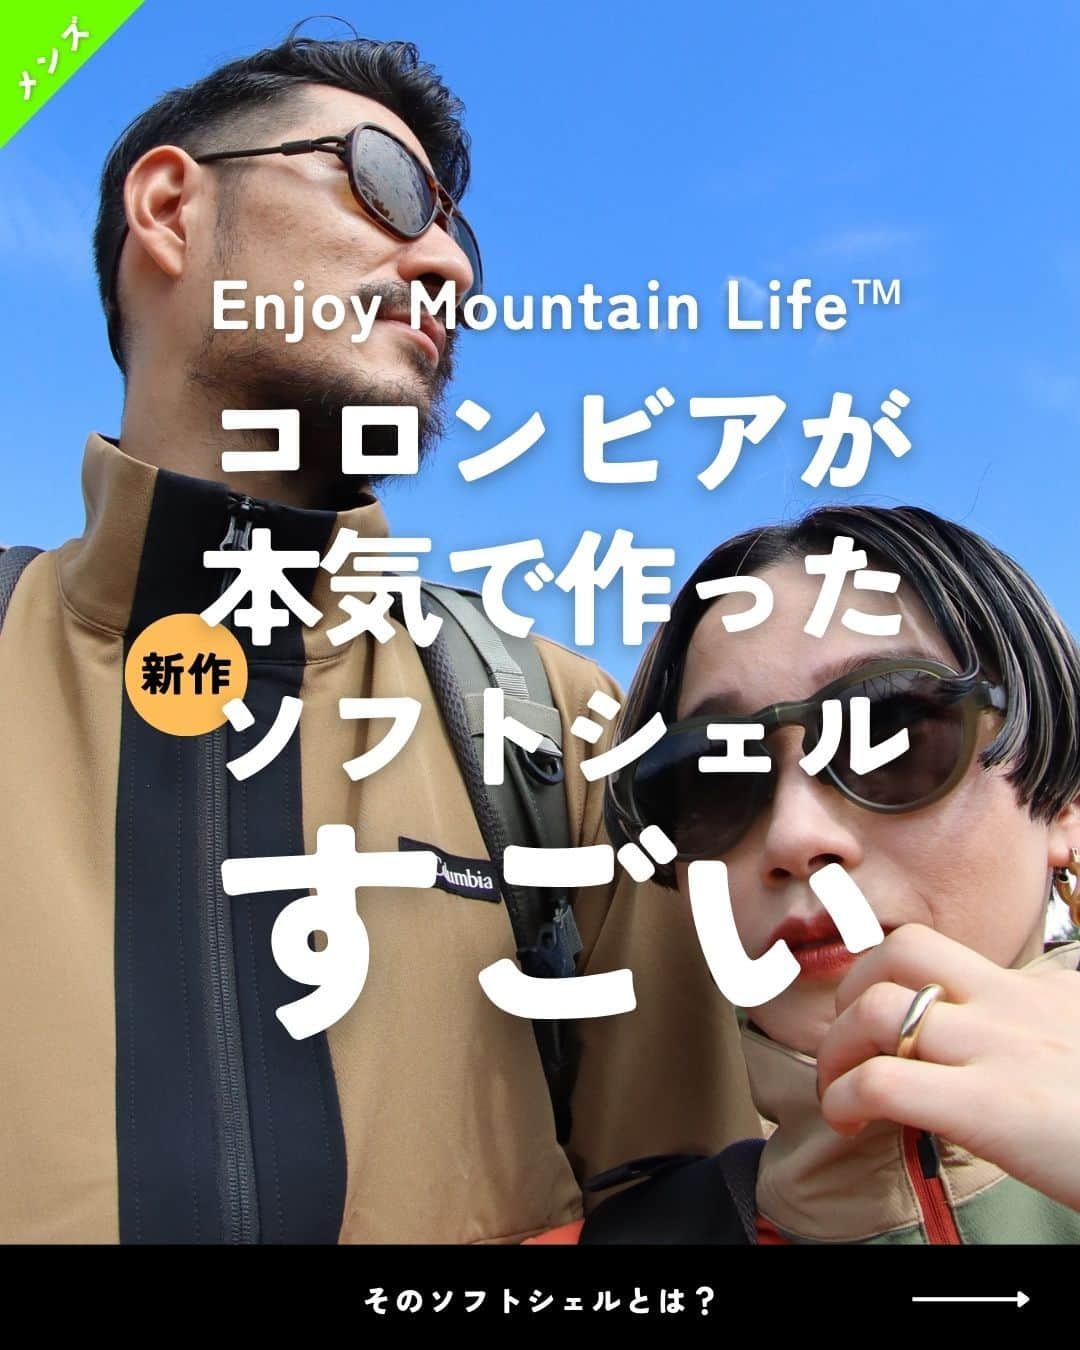 登山*トレッキング*アウトドア『.HYAKKEI』のインスタグラム：「長い歴史を誇るアウトドアブランド「コロンビア」から 新しいソフトシェルが誕生しました。  Enjoy Mountain Life™ Brushed Jacket エンジョイマウンテンライフブラッシュドジャケット  Enjoy Mountain Life™Brushed Pant エンジョイマウンテンライフブラッシュドパンツ  あくまで着る人の快適性を追求したソフトシェルは 様々な天候やアクティビティを想定した機能性を搭載しています。  実際、もちもちのシェル生地に裏起毛など着ている人の動きを全く邪魔せず さらに透湿性も持ち合わせているので、山行中でも快適に過ごせます。  是非公式サイトで詳しくご覧になられてください。  ▼コロンビア2023FW特設サイト https://www.columbiasports.co.jp/shop/pages/mountain.aspx  ＝＝＝  THIS IS WHY WE HIKE  山に行きたい理由がある。  それはきっと山を登る人の数だけあるはずです。 それぞれの理由に心を動かされて、 明日もまた山行へ。自分のペースで。 仲間たちと一緒に。とにかく楽しく。 そして一歩一歩の先に広がる絶景に向かって。 初めて登山に行く人、次のステップを目指す人、 すべての人たちに山の楽しさを。  ＝＝＝  #hyakkeime #登山 #山登り #トレッキング #Columbia #PR」